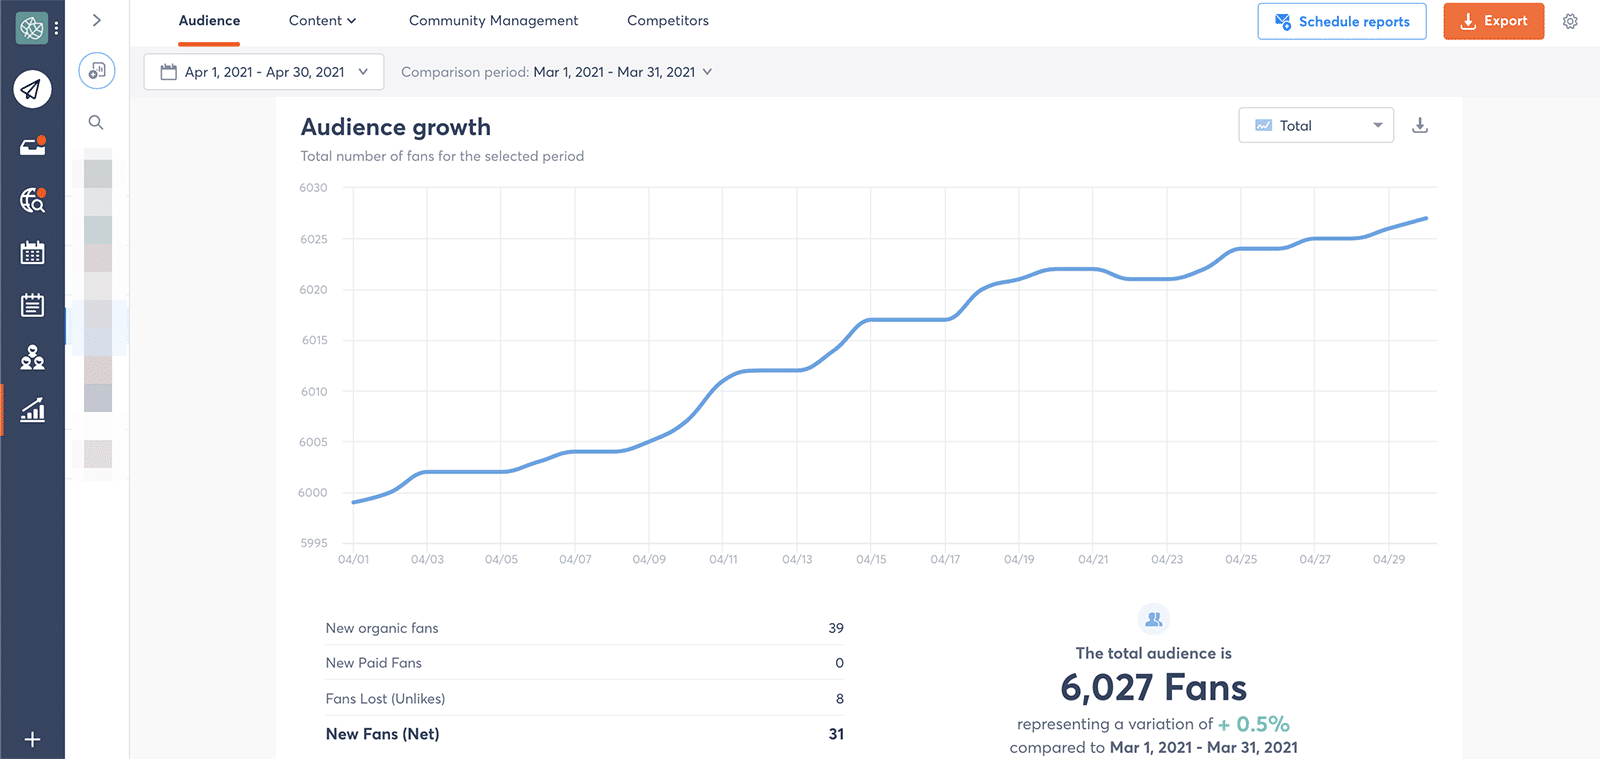 Facebook metrics - audience growth total